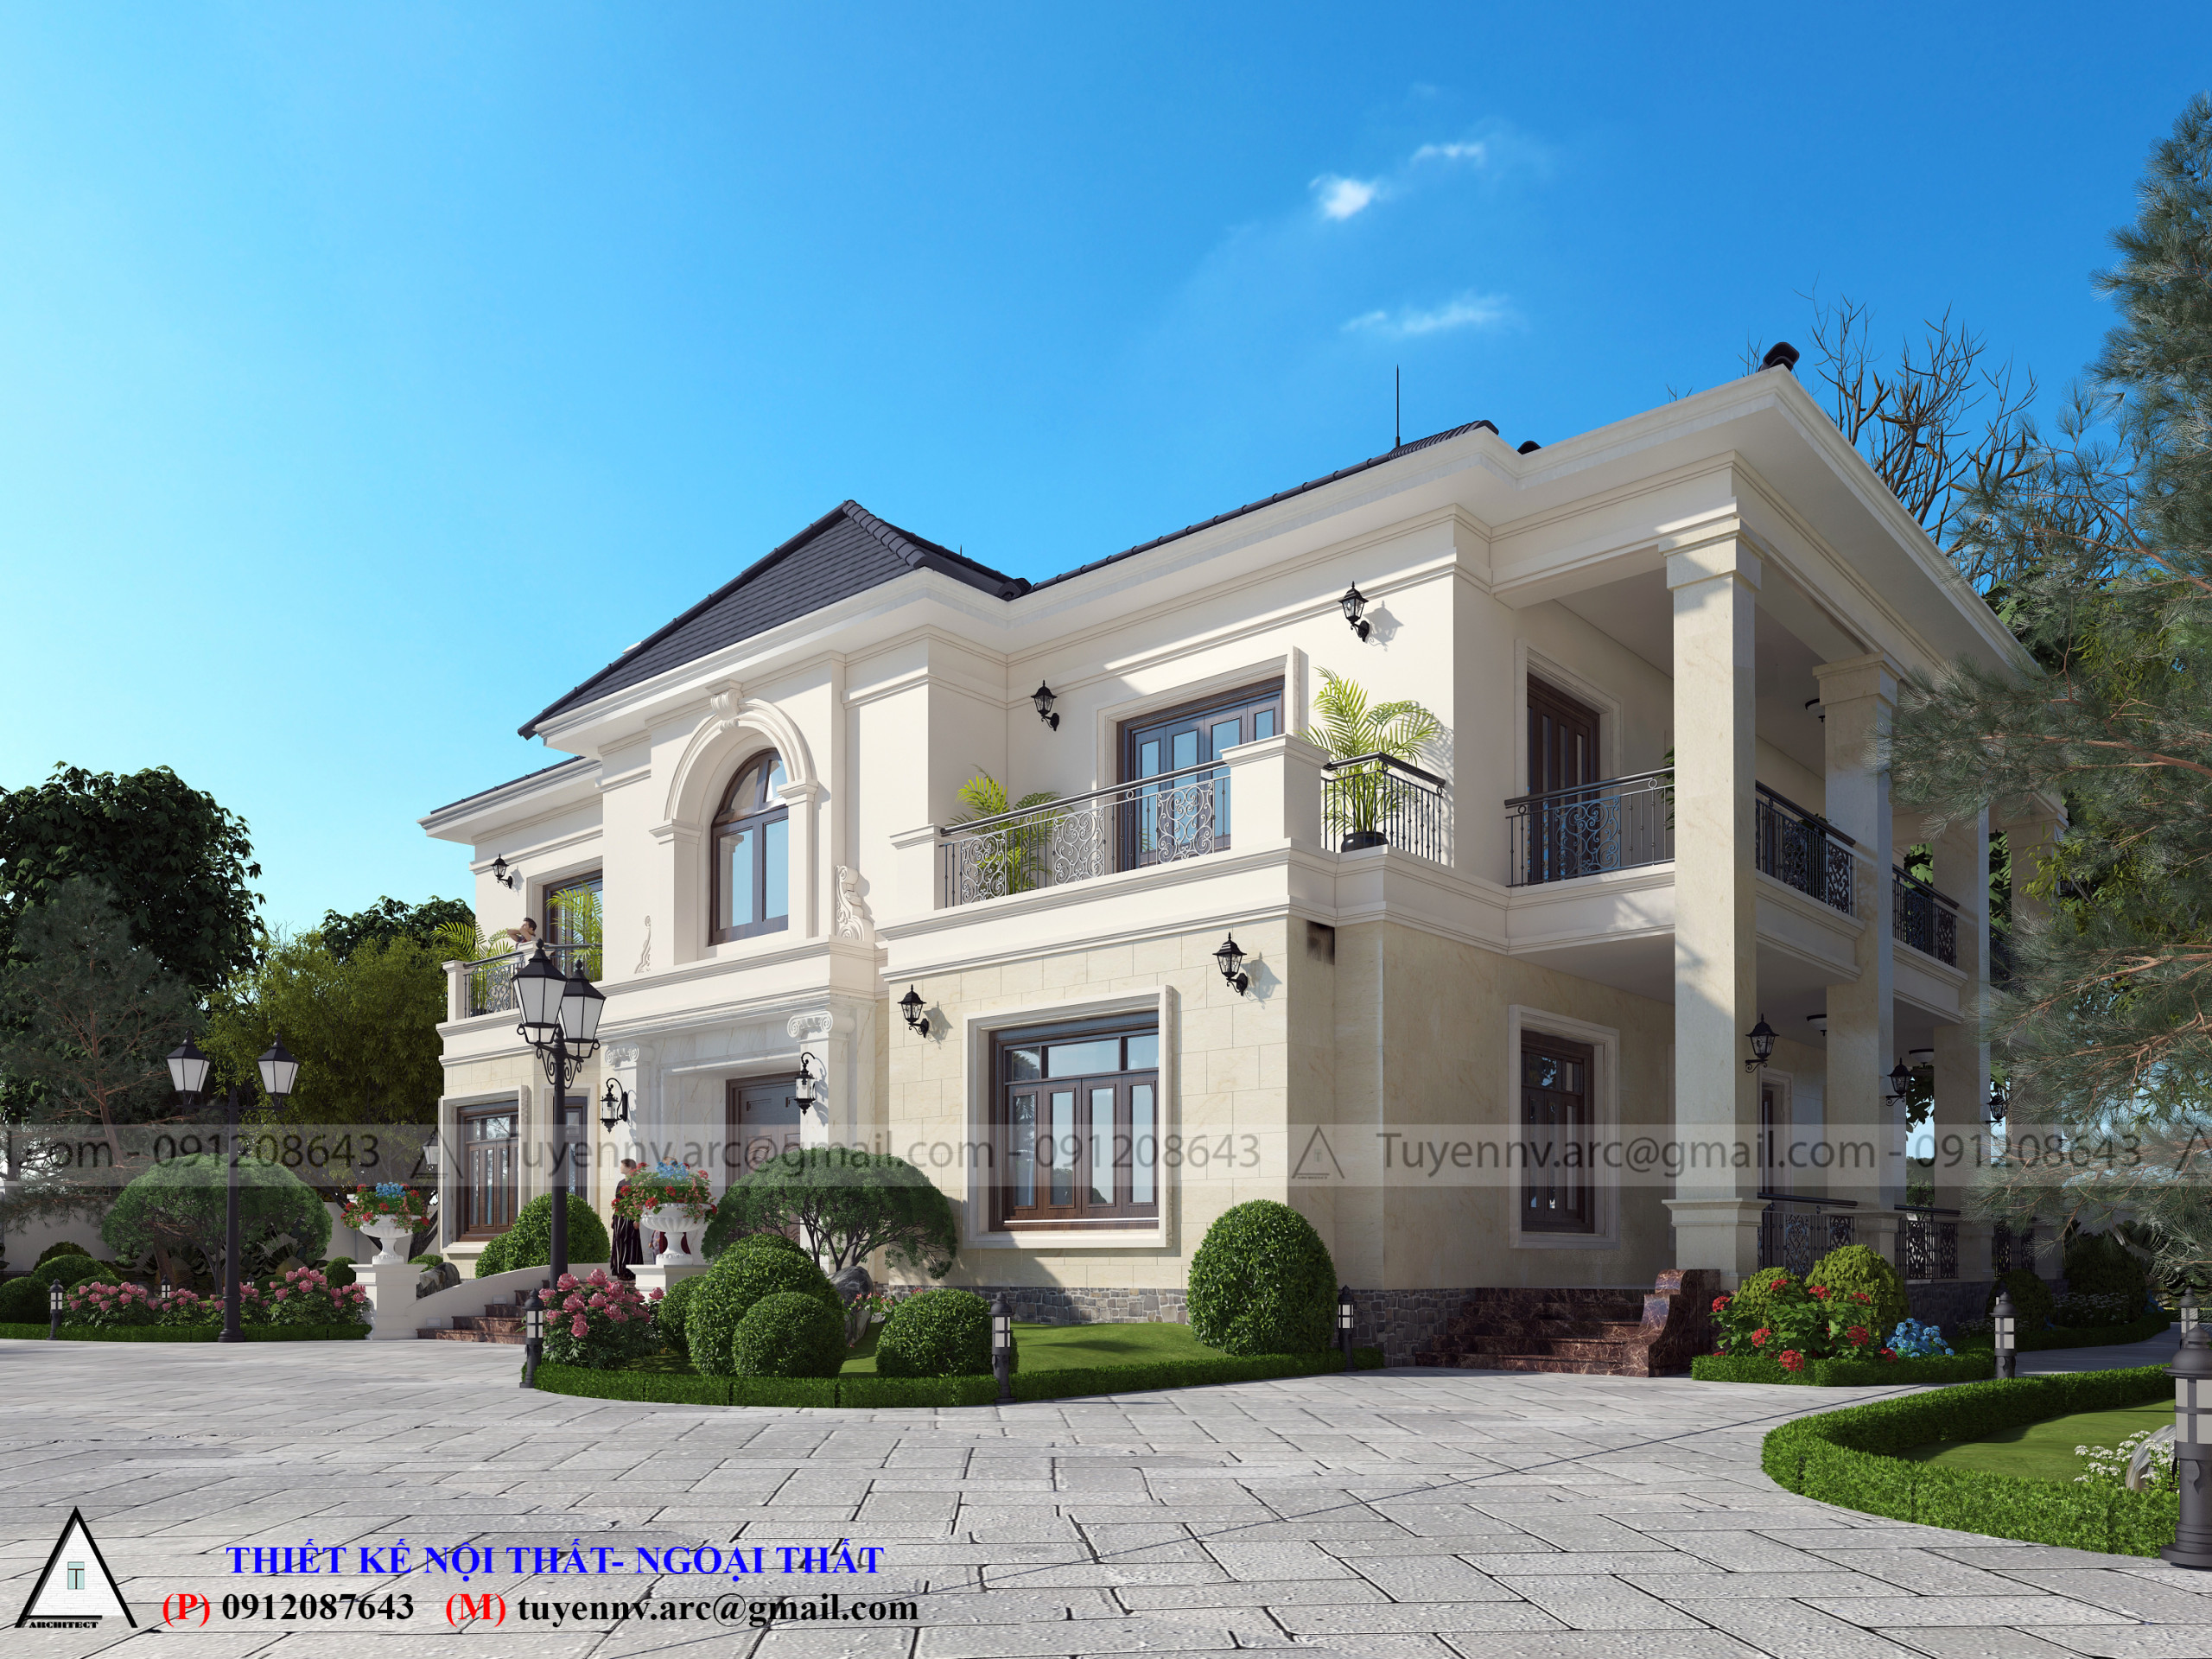 thiết kế Biệt Thự 2 tầng tại Vĩnh Phúc Biệt thư sân vườn 2 tầng 6 1549857983